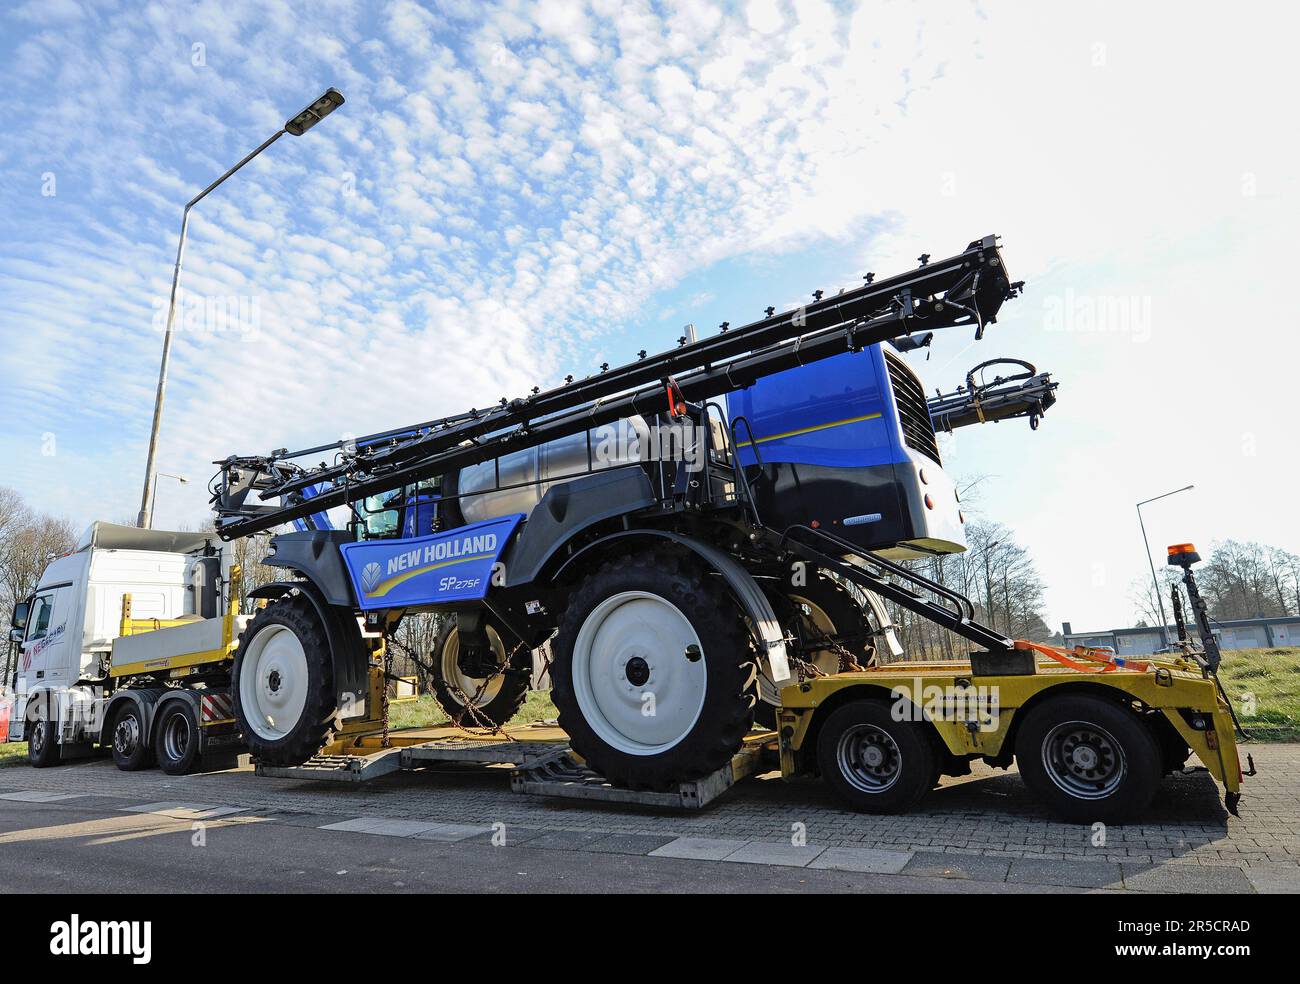 LICHTENB.S., Belgio - 10 dicembre 2016: anteriori del braccio irroratrice agricola, trasportati su una speciale basso-caricatore camion con rimorchio Foto Stock